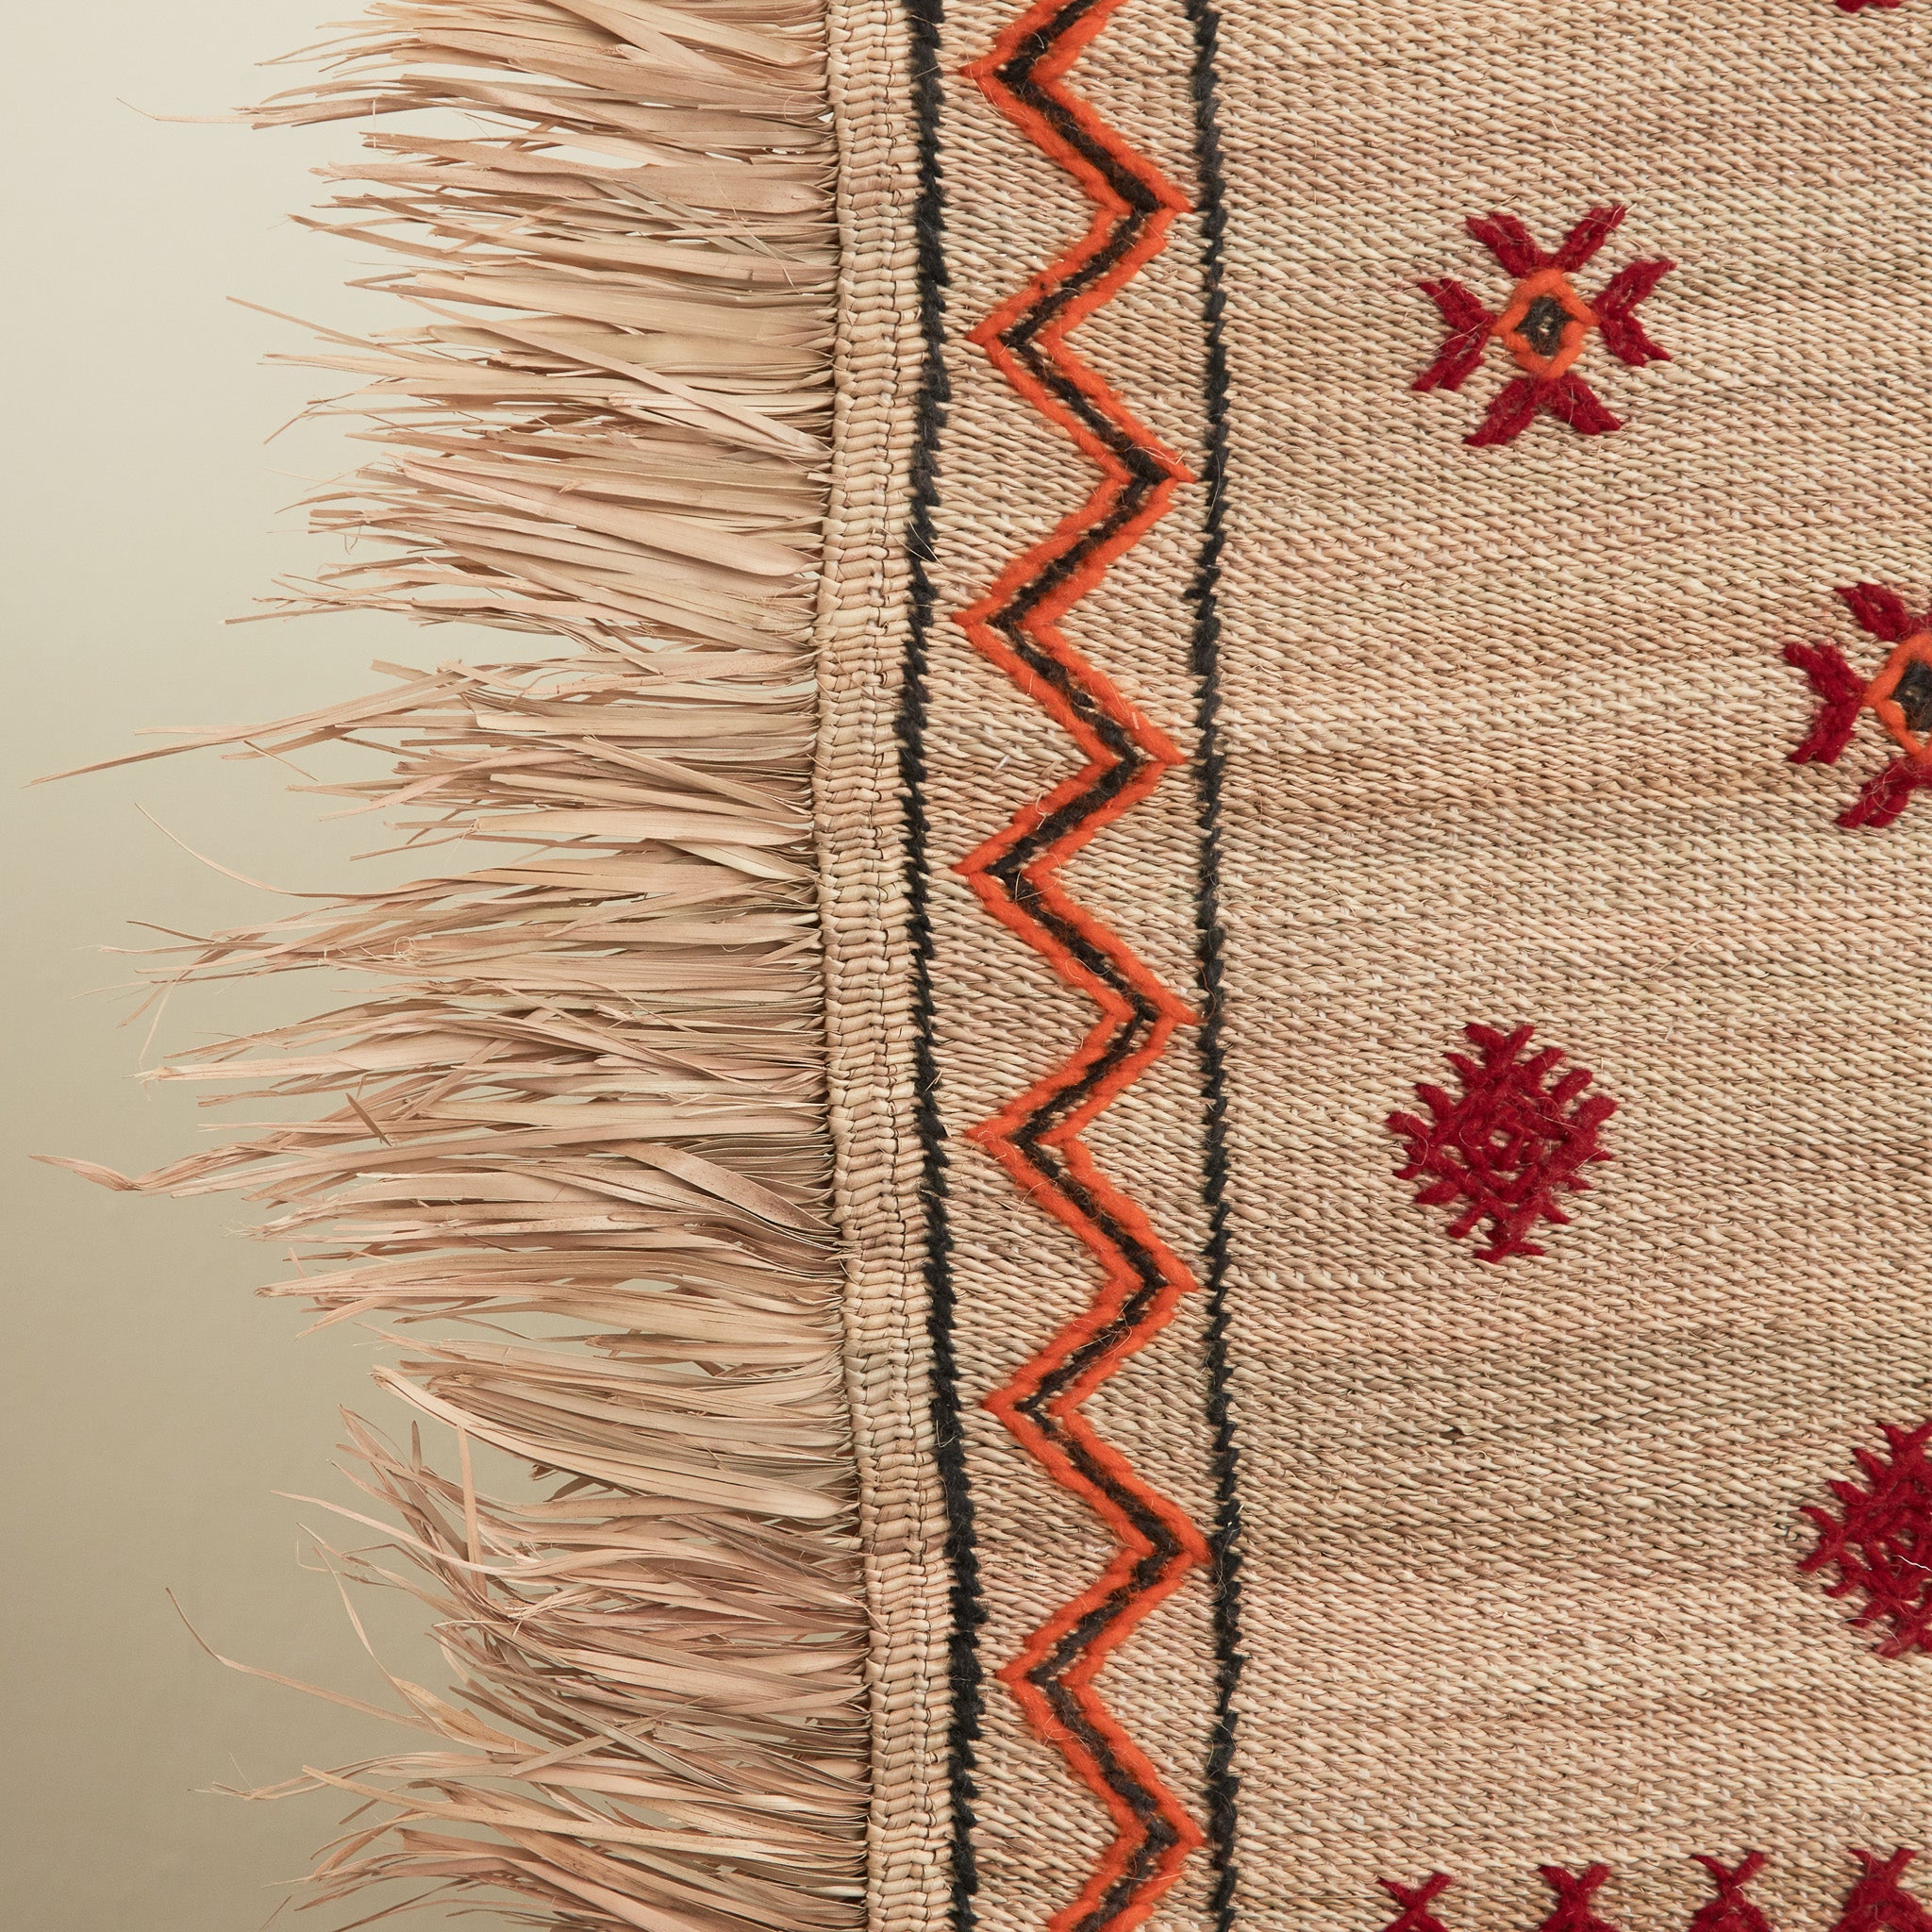 dettaglio della frangia in paglia e del ricamo di una stuoia tappeto in paglia hassira media in paglia di palma e ricami in lana